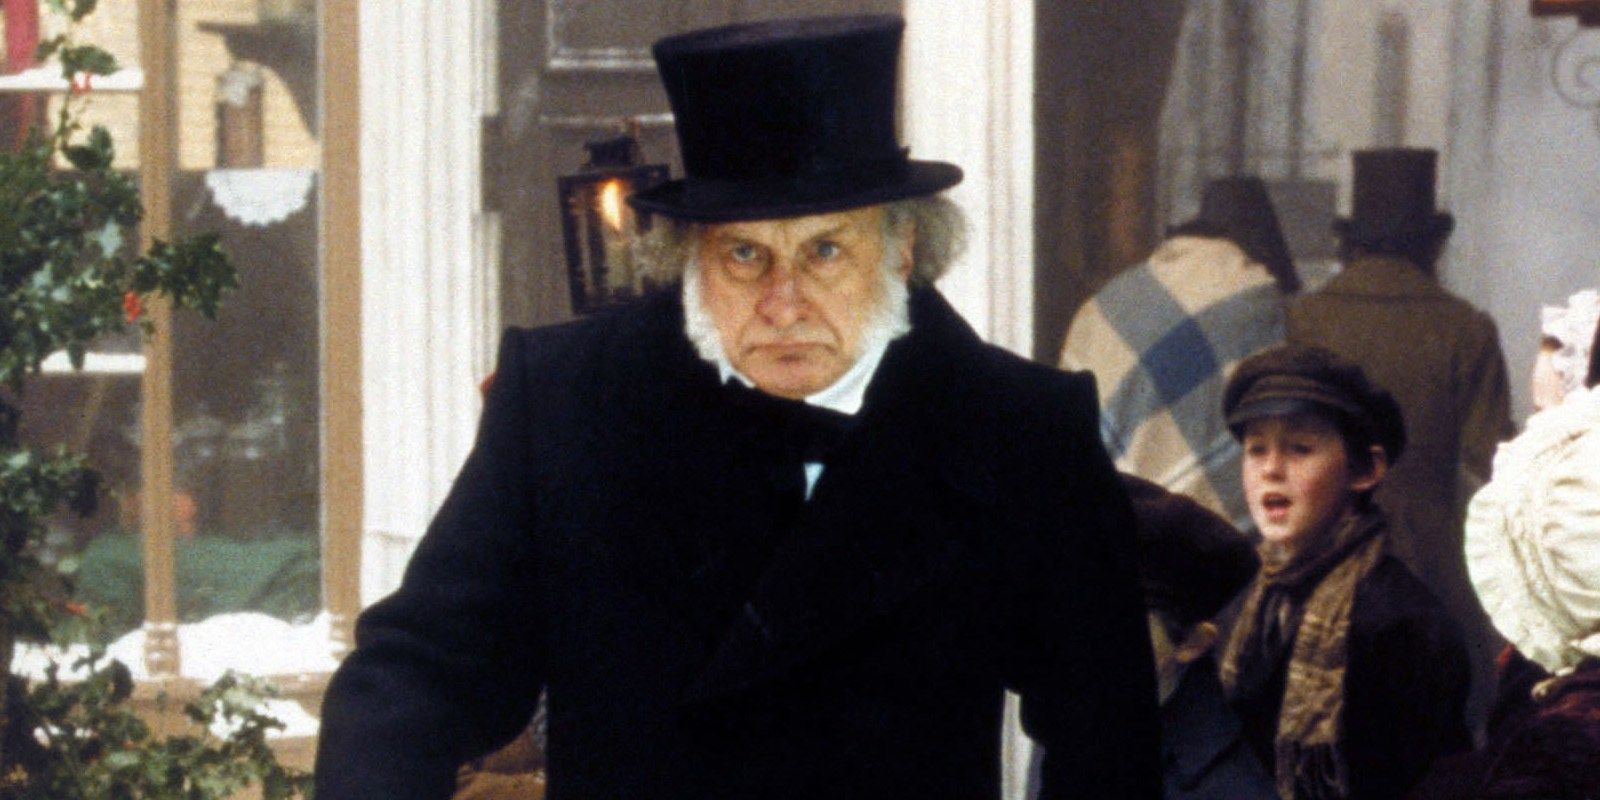 George C. Scott as Scrooge in A Christmas Carol.